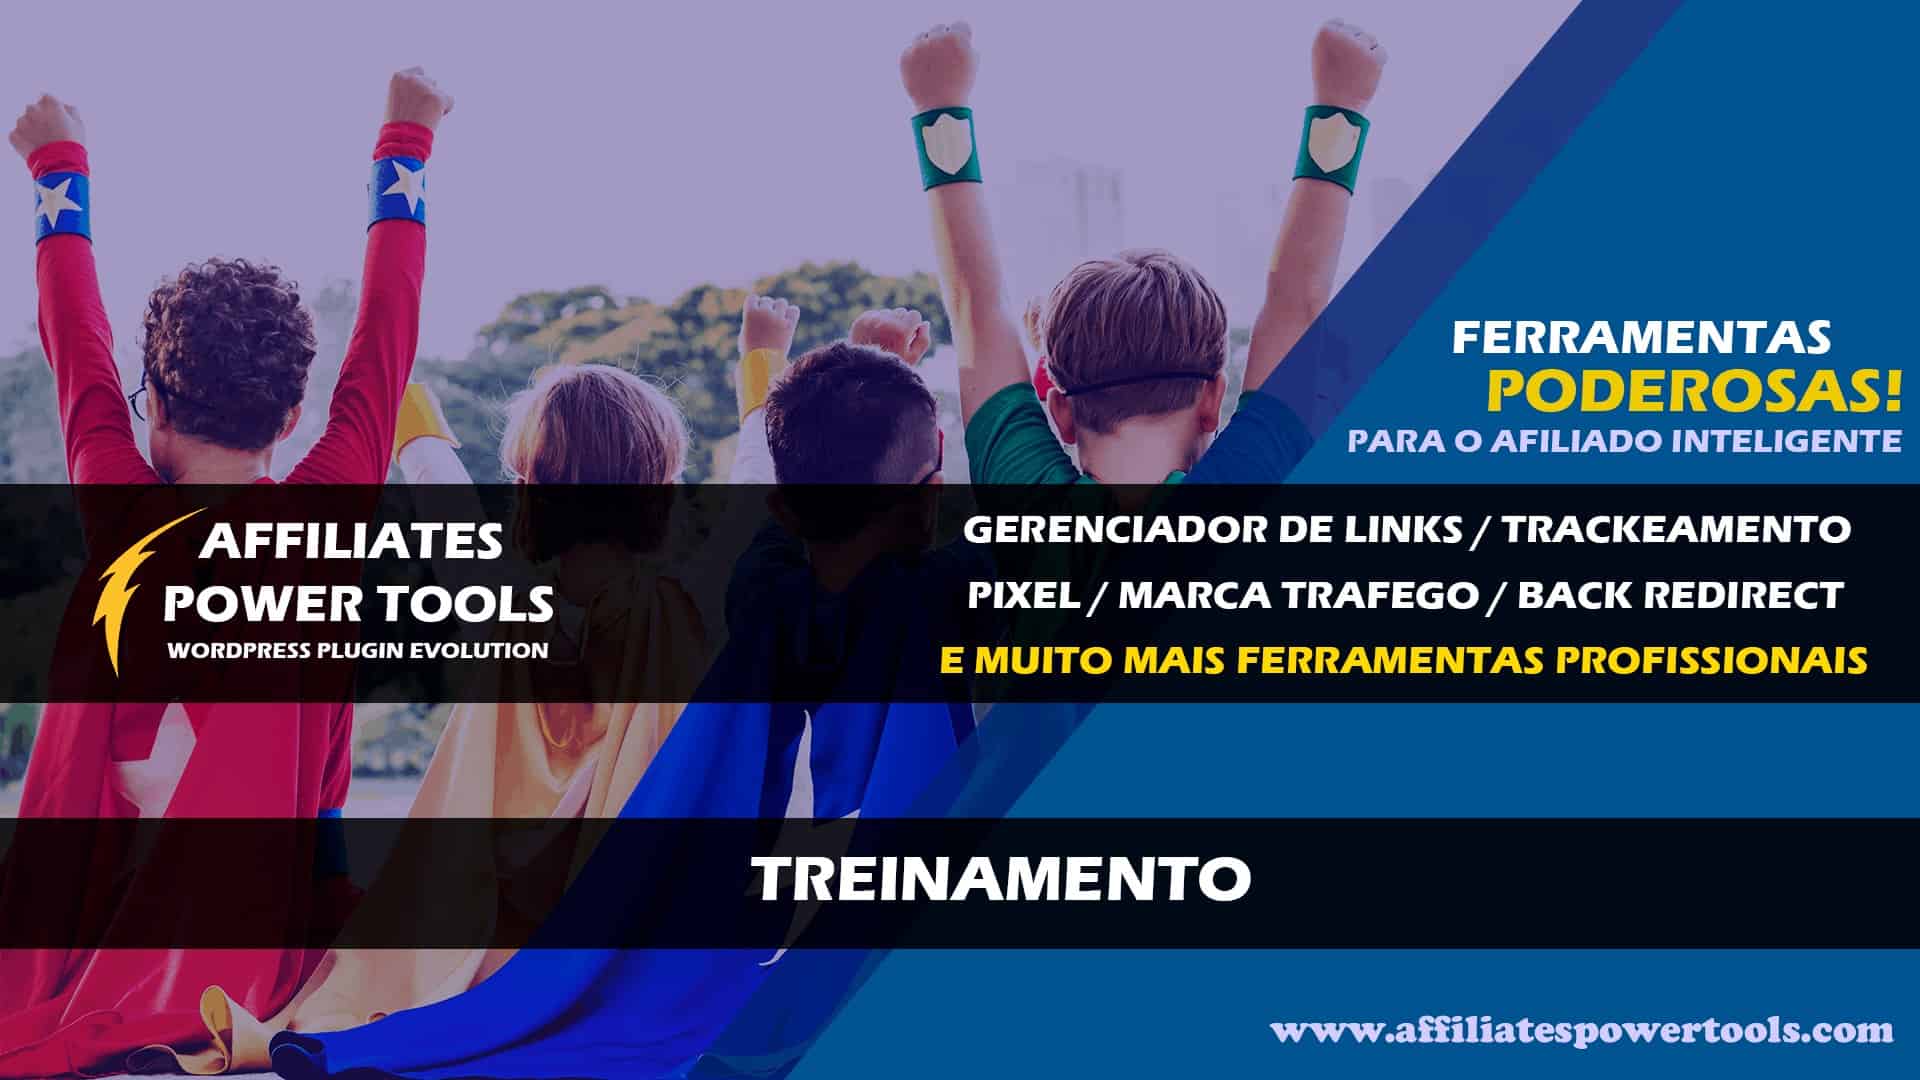 Treinamento - Best Blog Brasil - Os Blogs mais Incríveis da Web